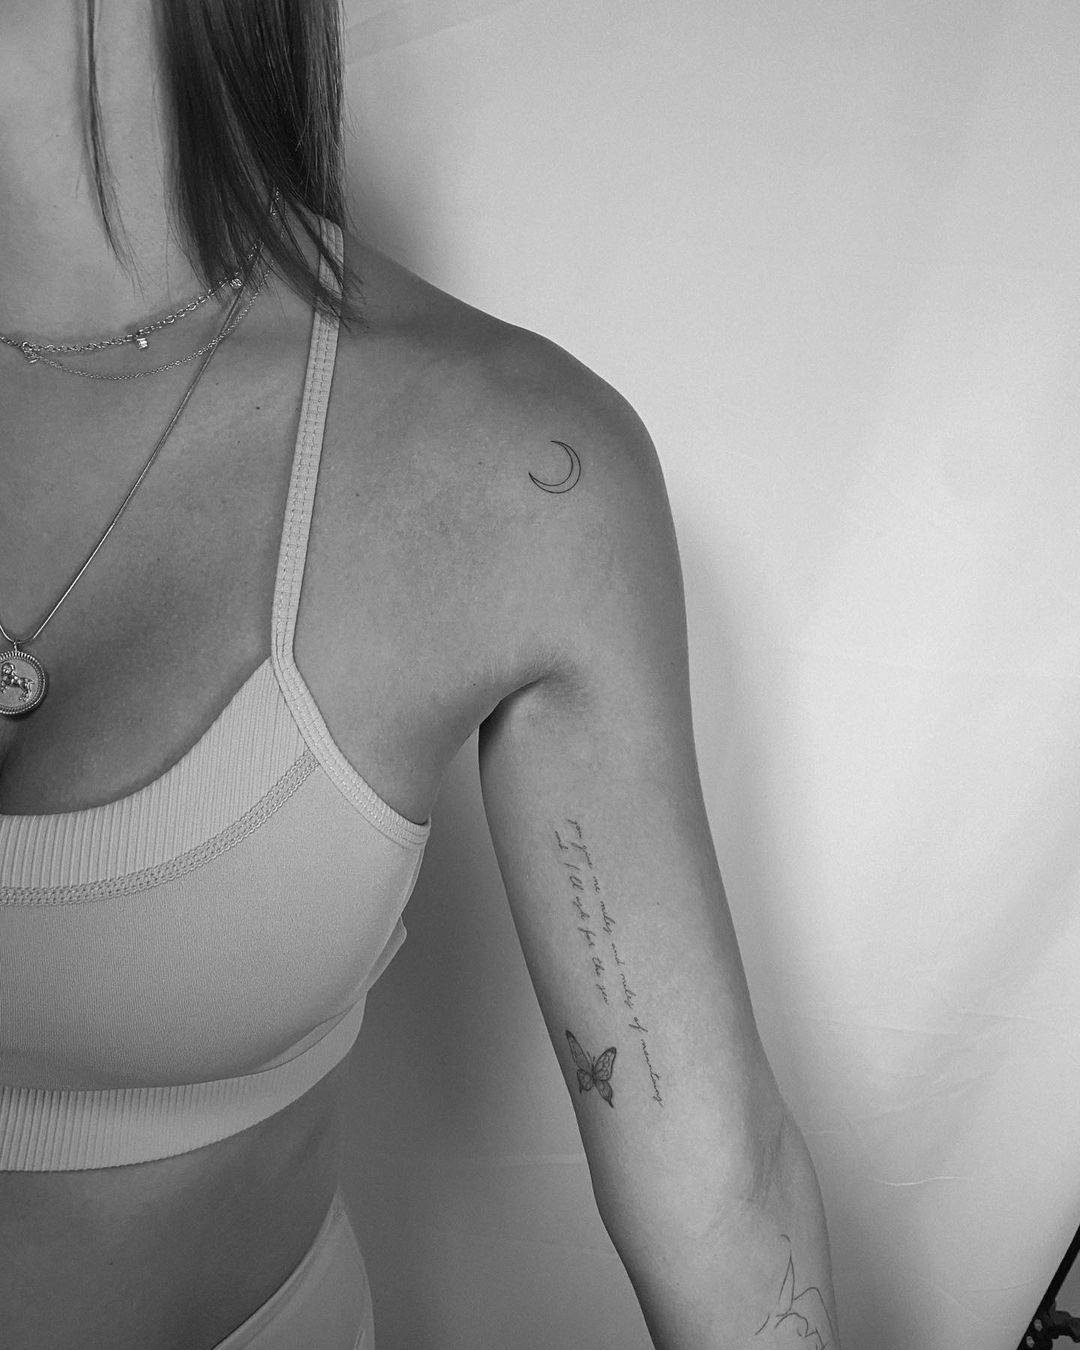 Tatuajes de luna minimalistas: ideas bonitas y sencillas